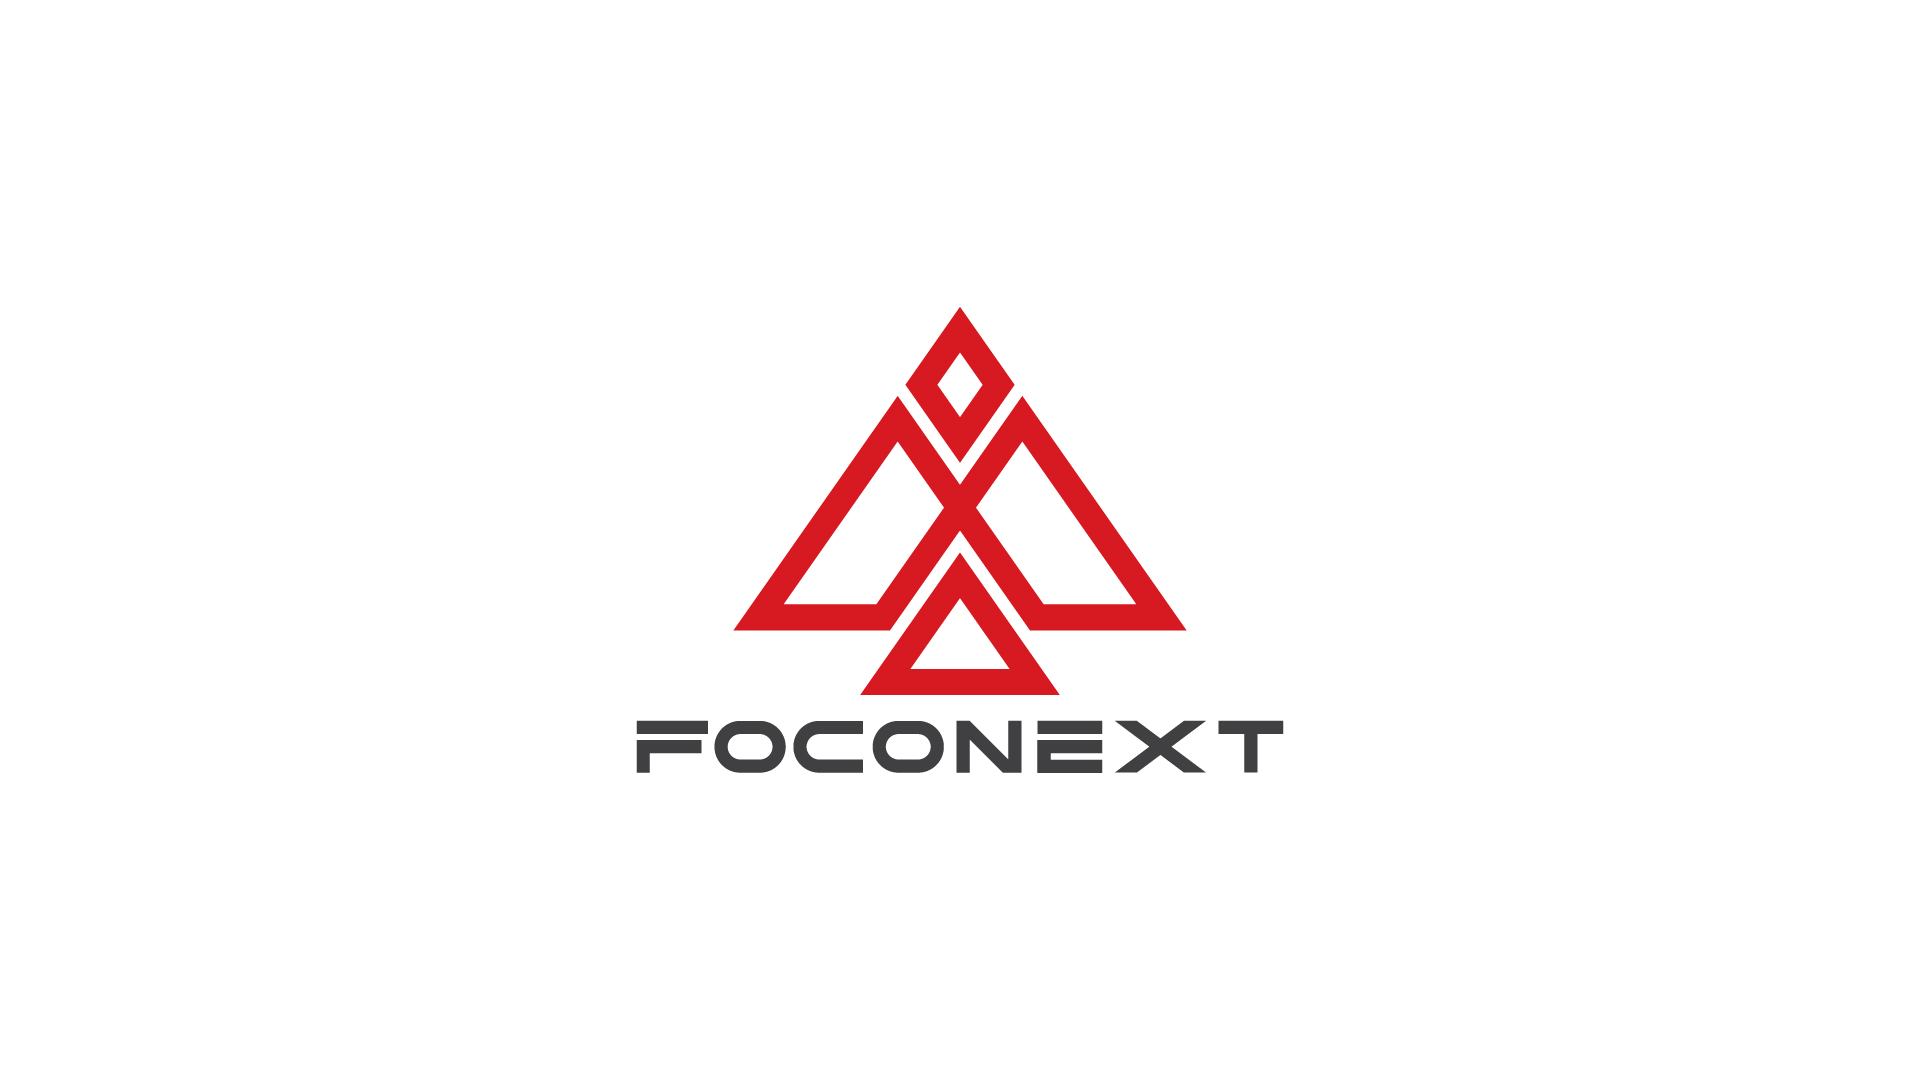 Foconex